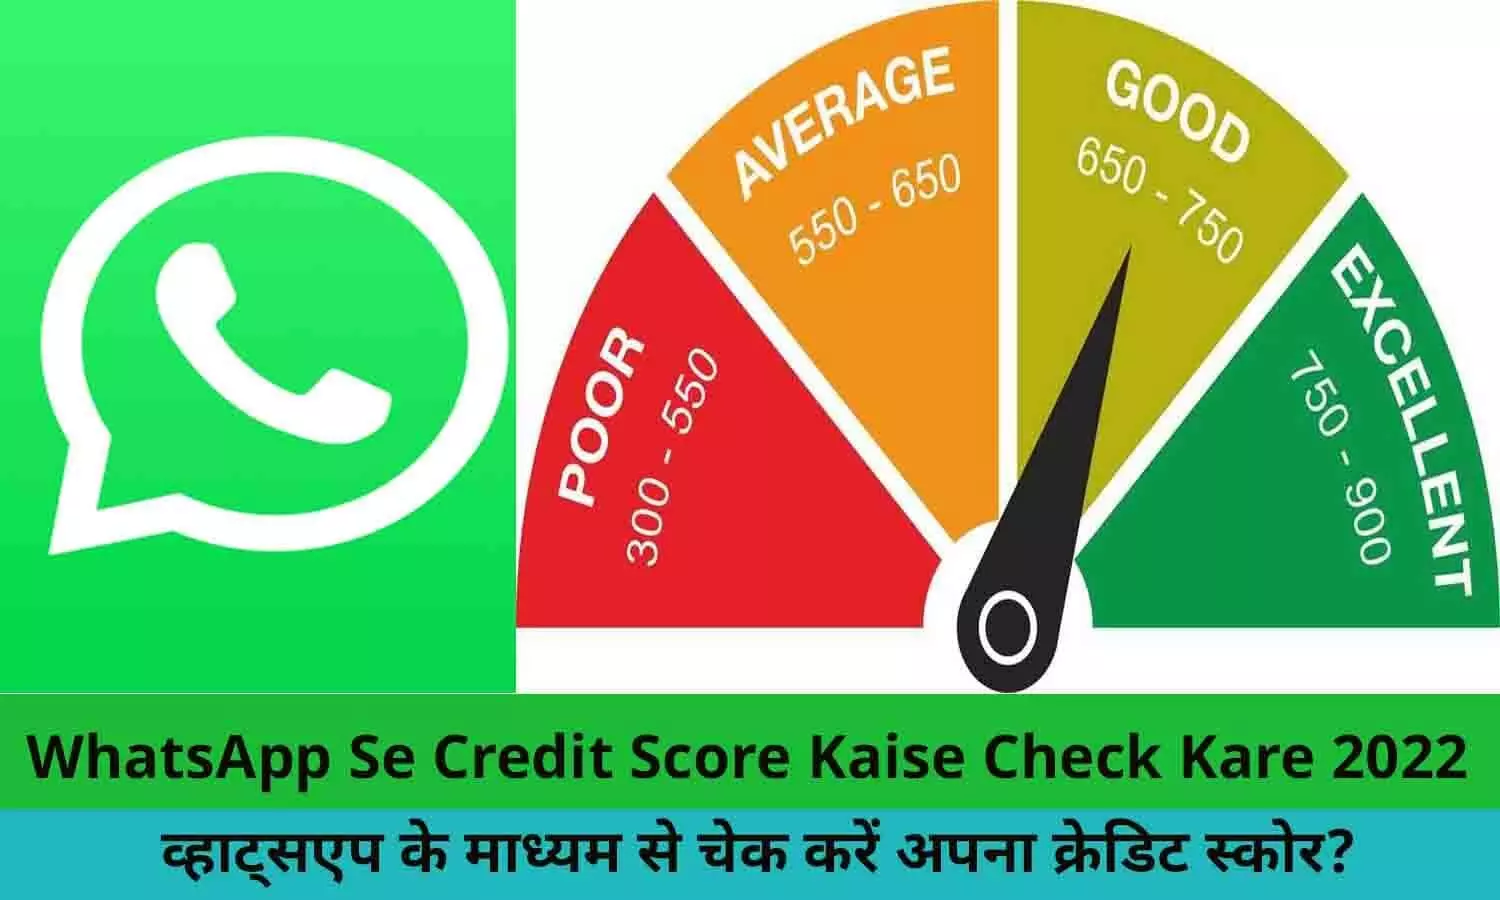 WhatsApp Se Credit Score Kaise Check Kare 2022: व्हाट्सएप के माध्यम से चेक करें अपना क्रेडिट स्कोर? इससे आसान तरीका दुनिया में कोई नहीं बताएगा